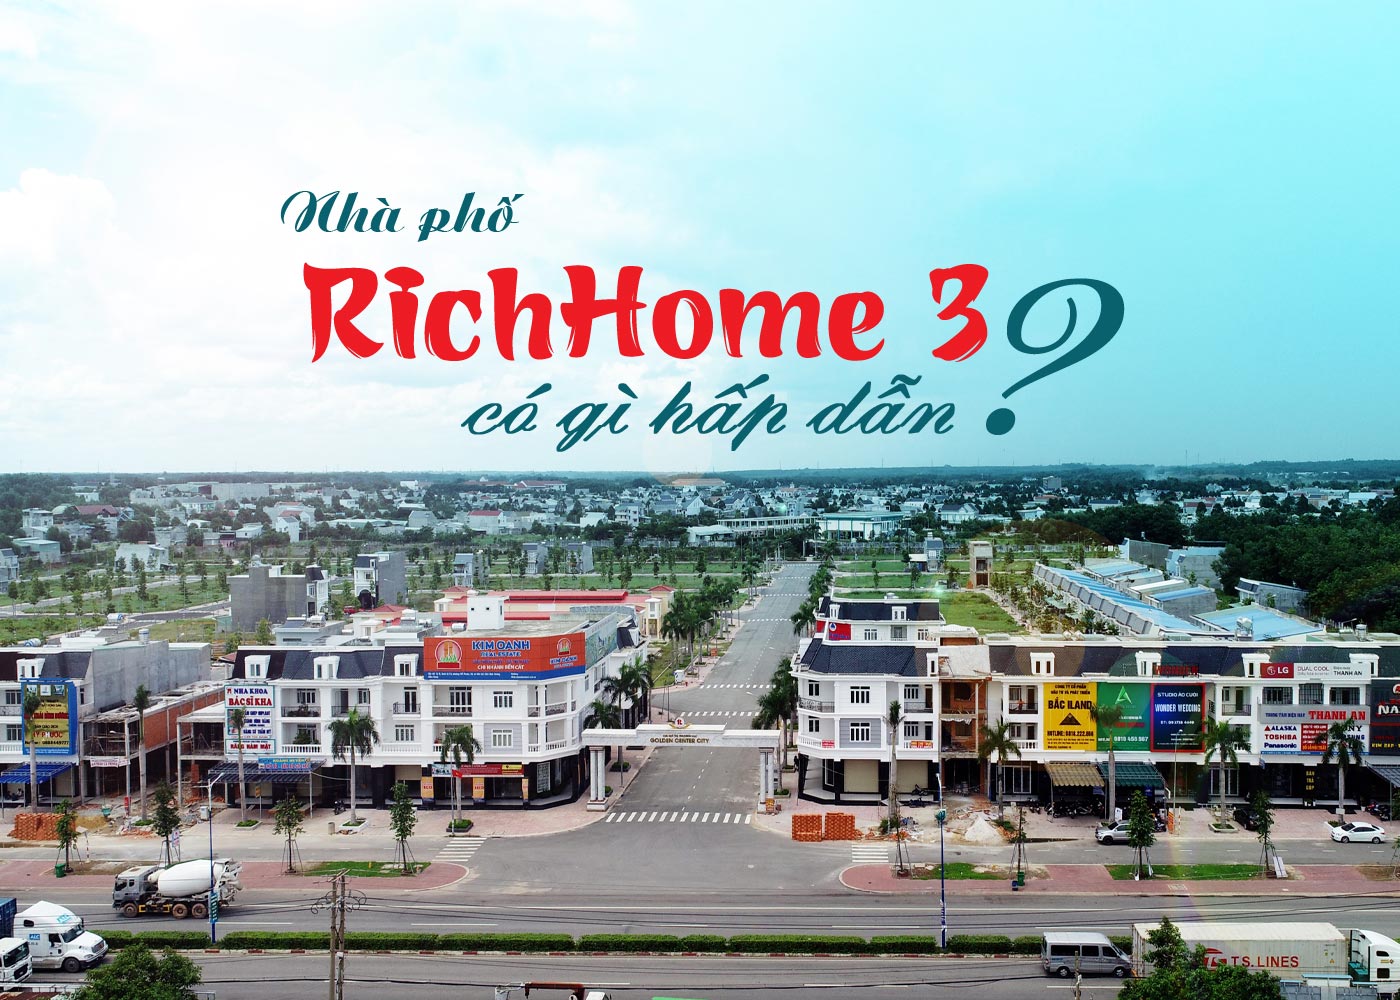 Nhà phố RichHome 3 có gì hấp dẫn - Ảnh 1